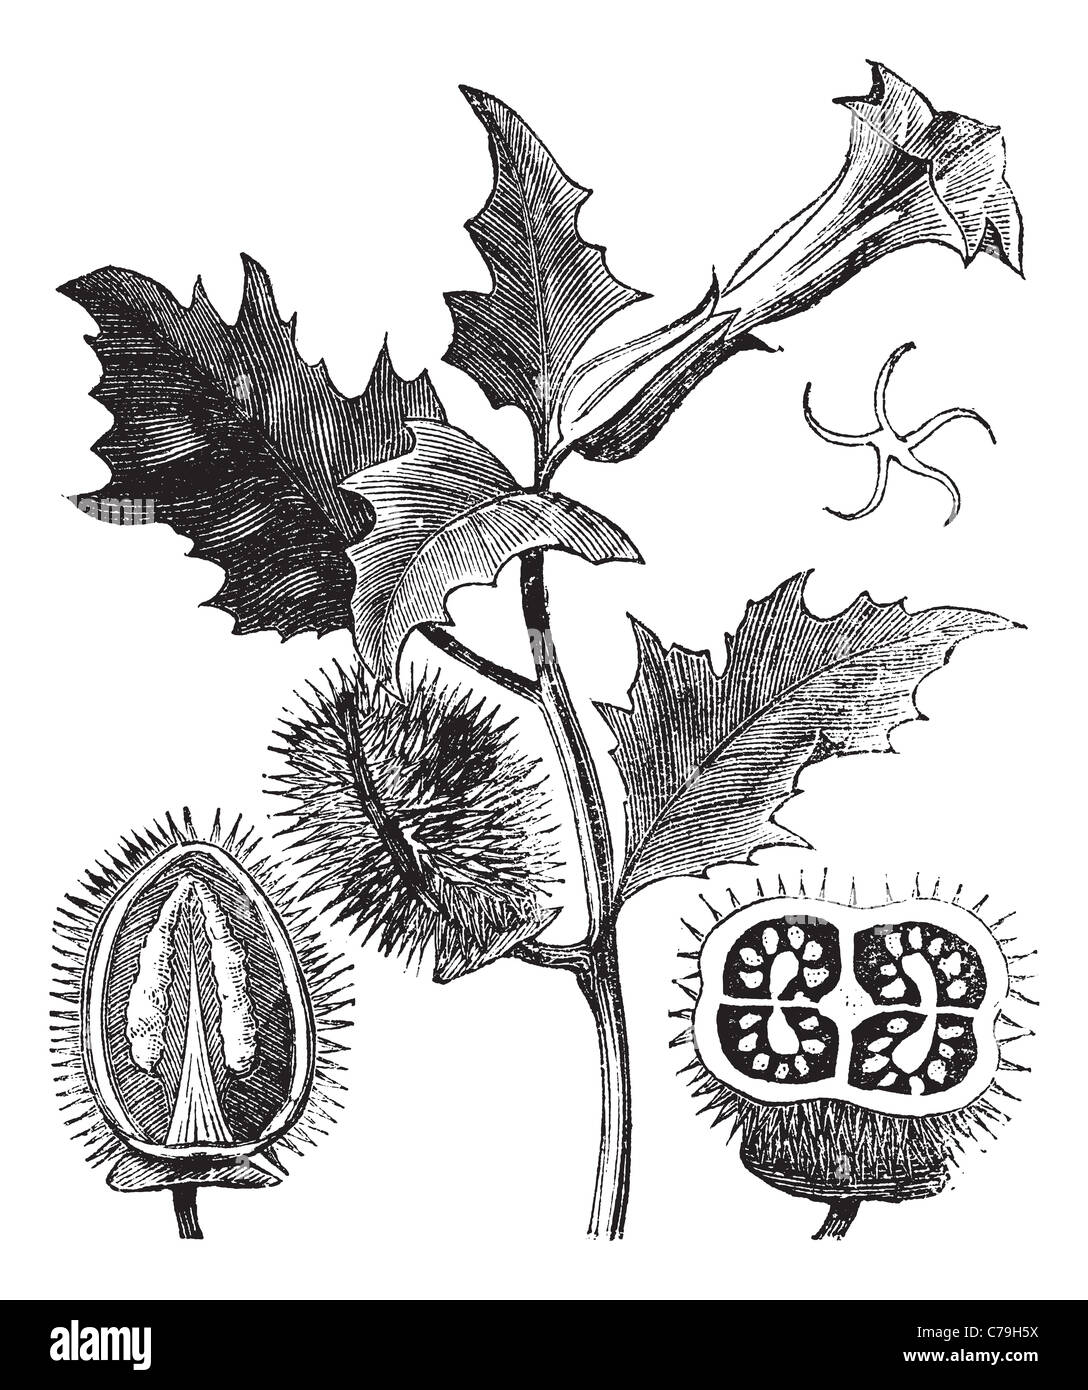 Thorn Apple, vintage engraving. Old engraved illustration of Thorn ...